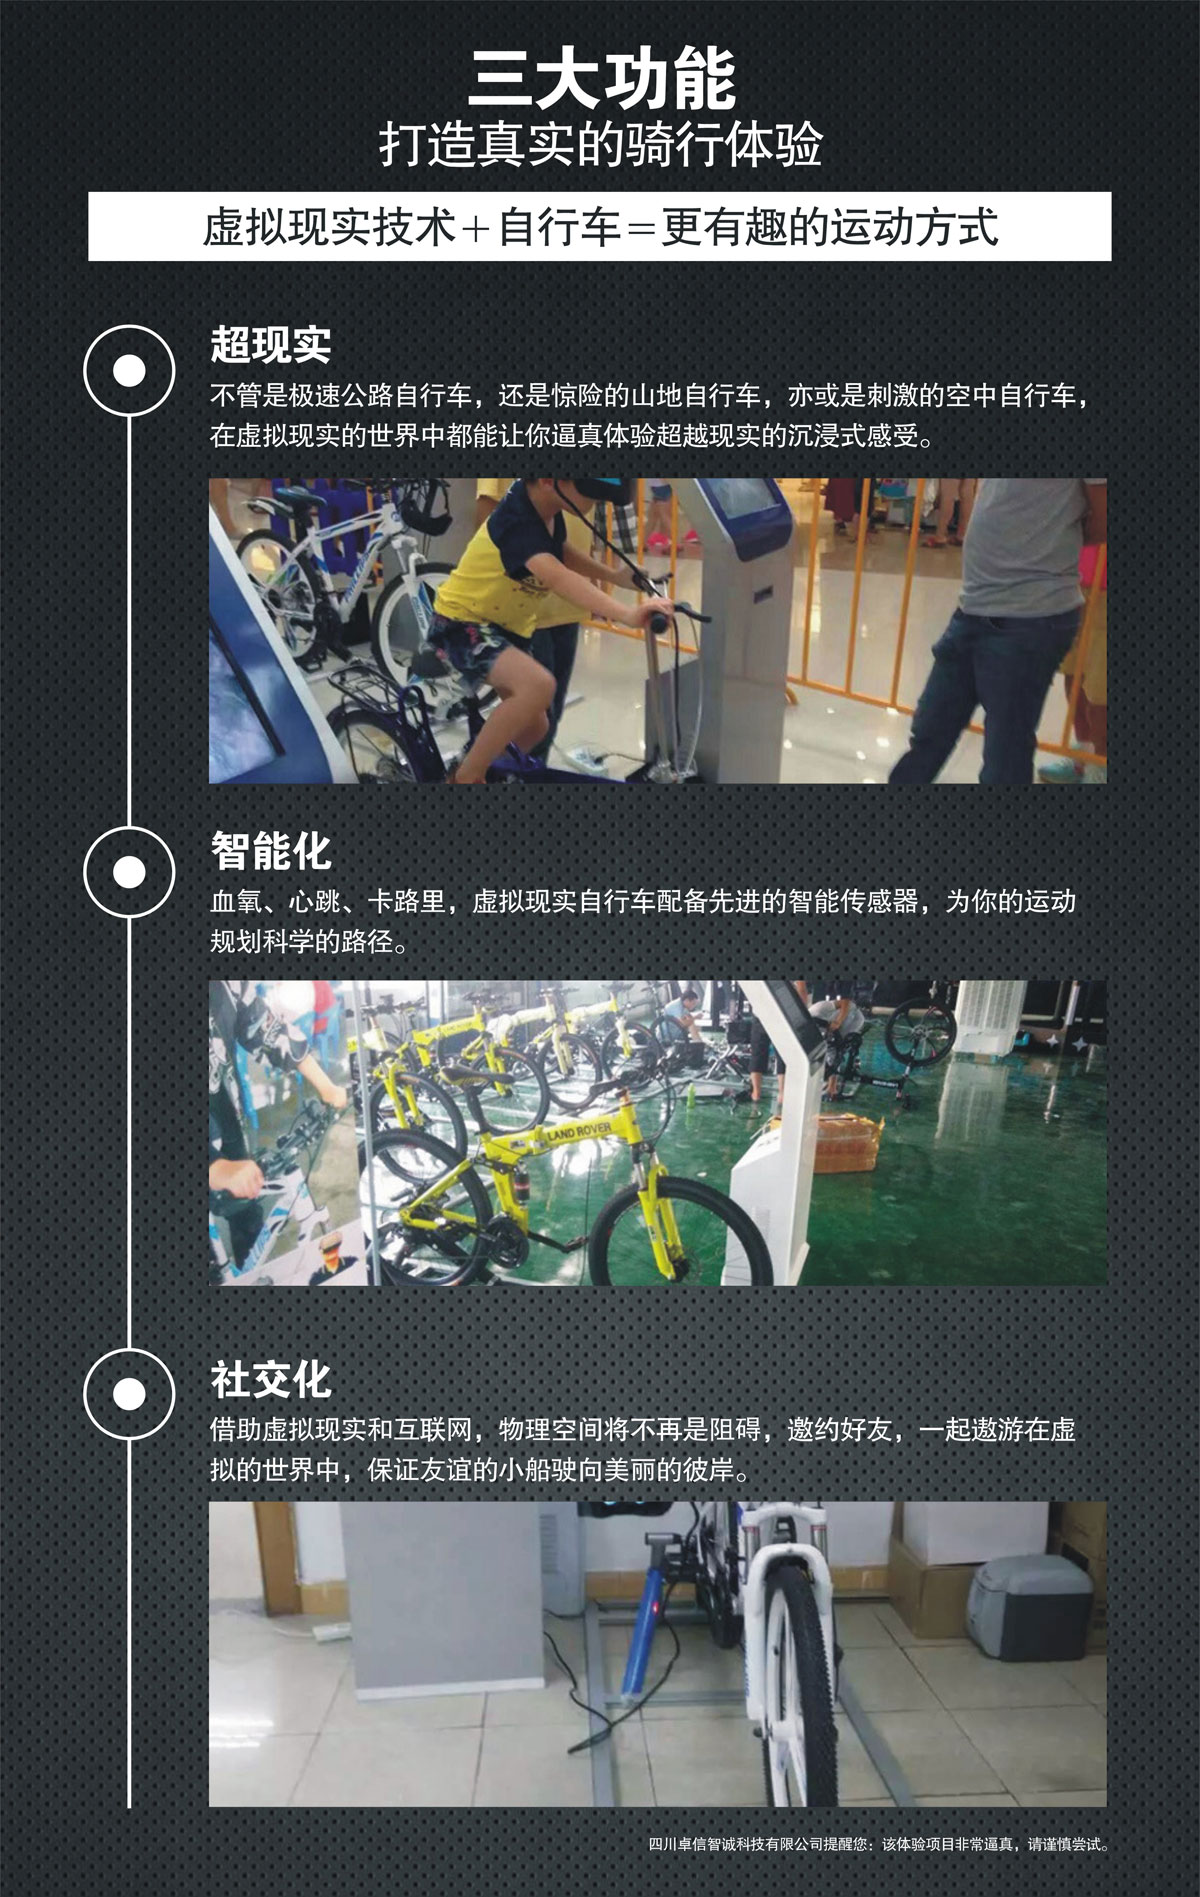 环幕影院VR自行车三大功能打造真实骑行体验.jpg